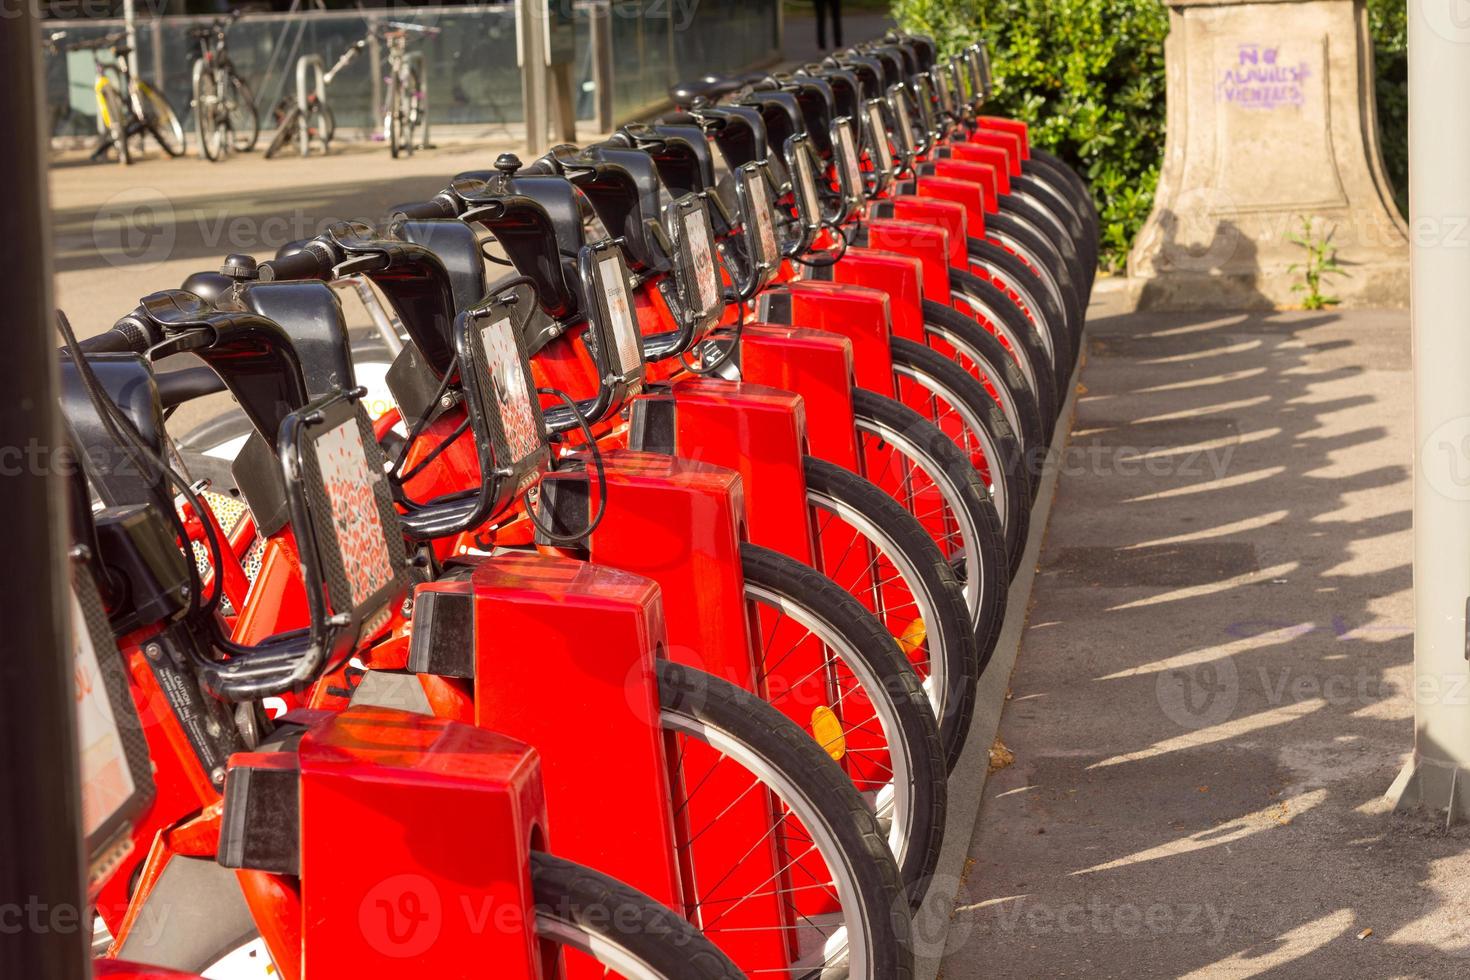 Servicio de alquiler de bicicletas en el estacionamiento de la carretera de la ciudad con luz solar, concepto de transporte público. foto